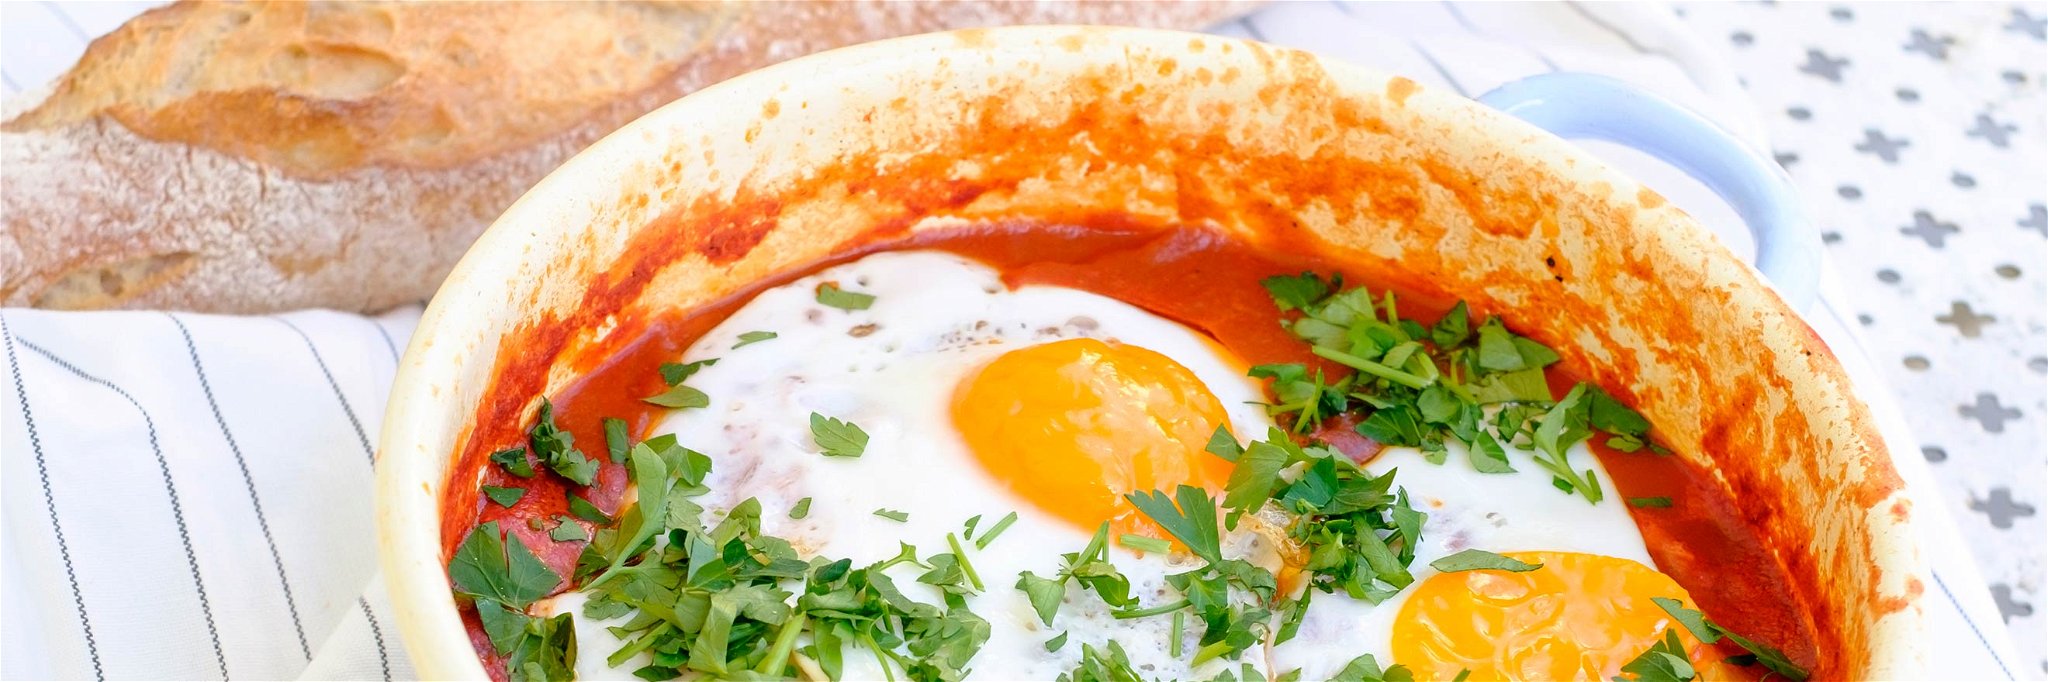 Shakshuka: Egg and Tomato Breakfast